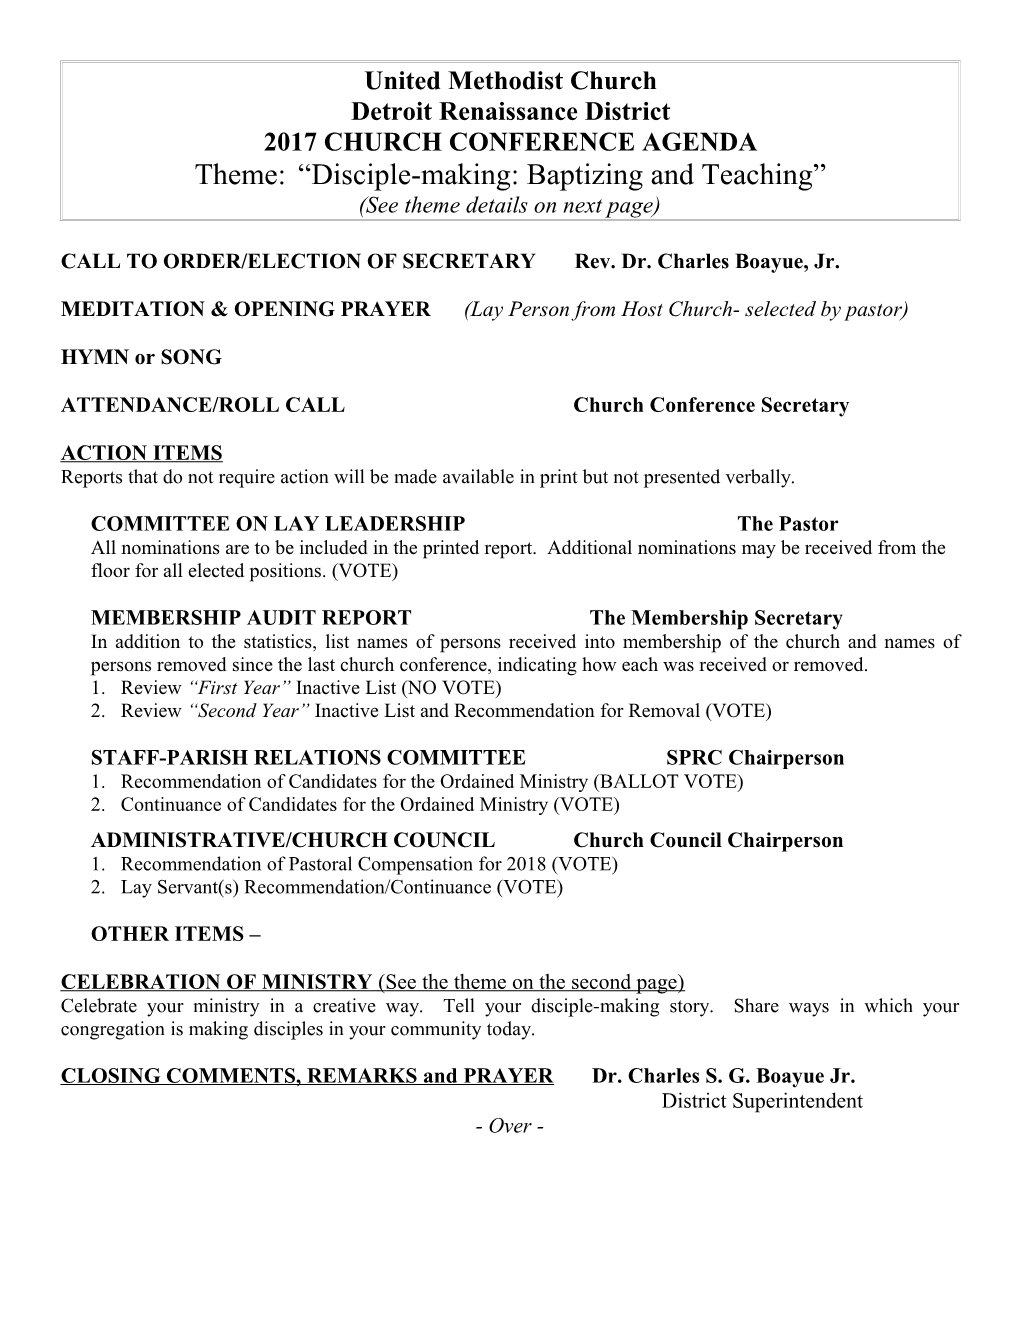 2003 Church Conference Agenda